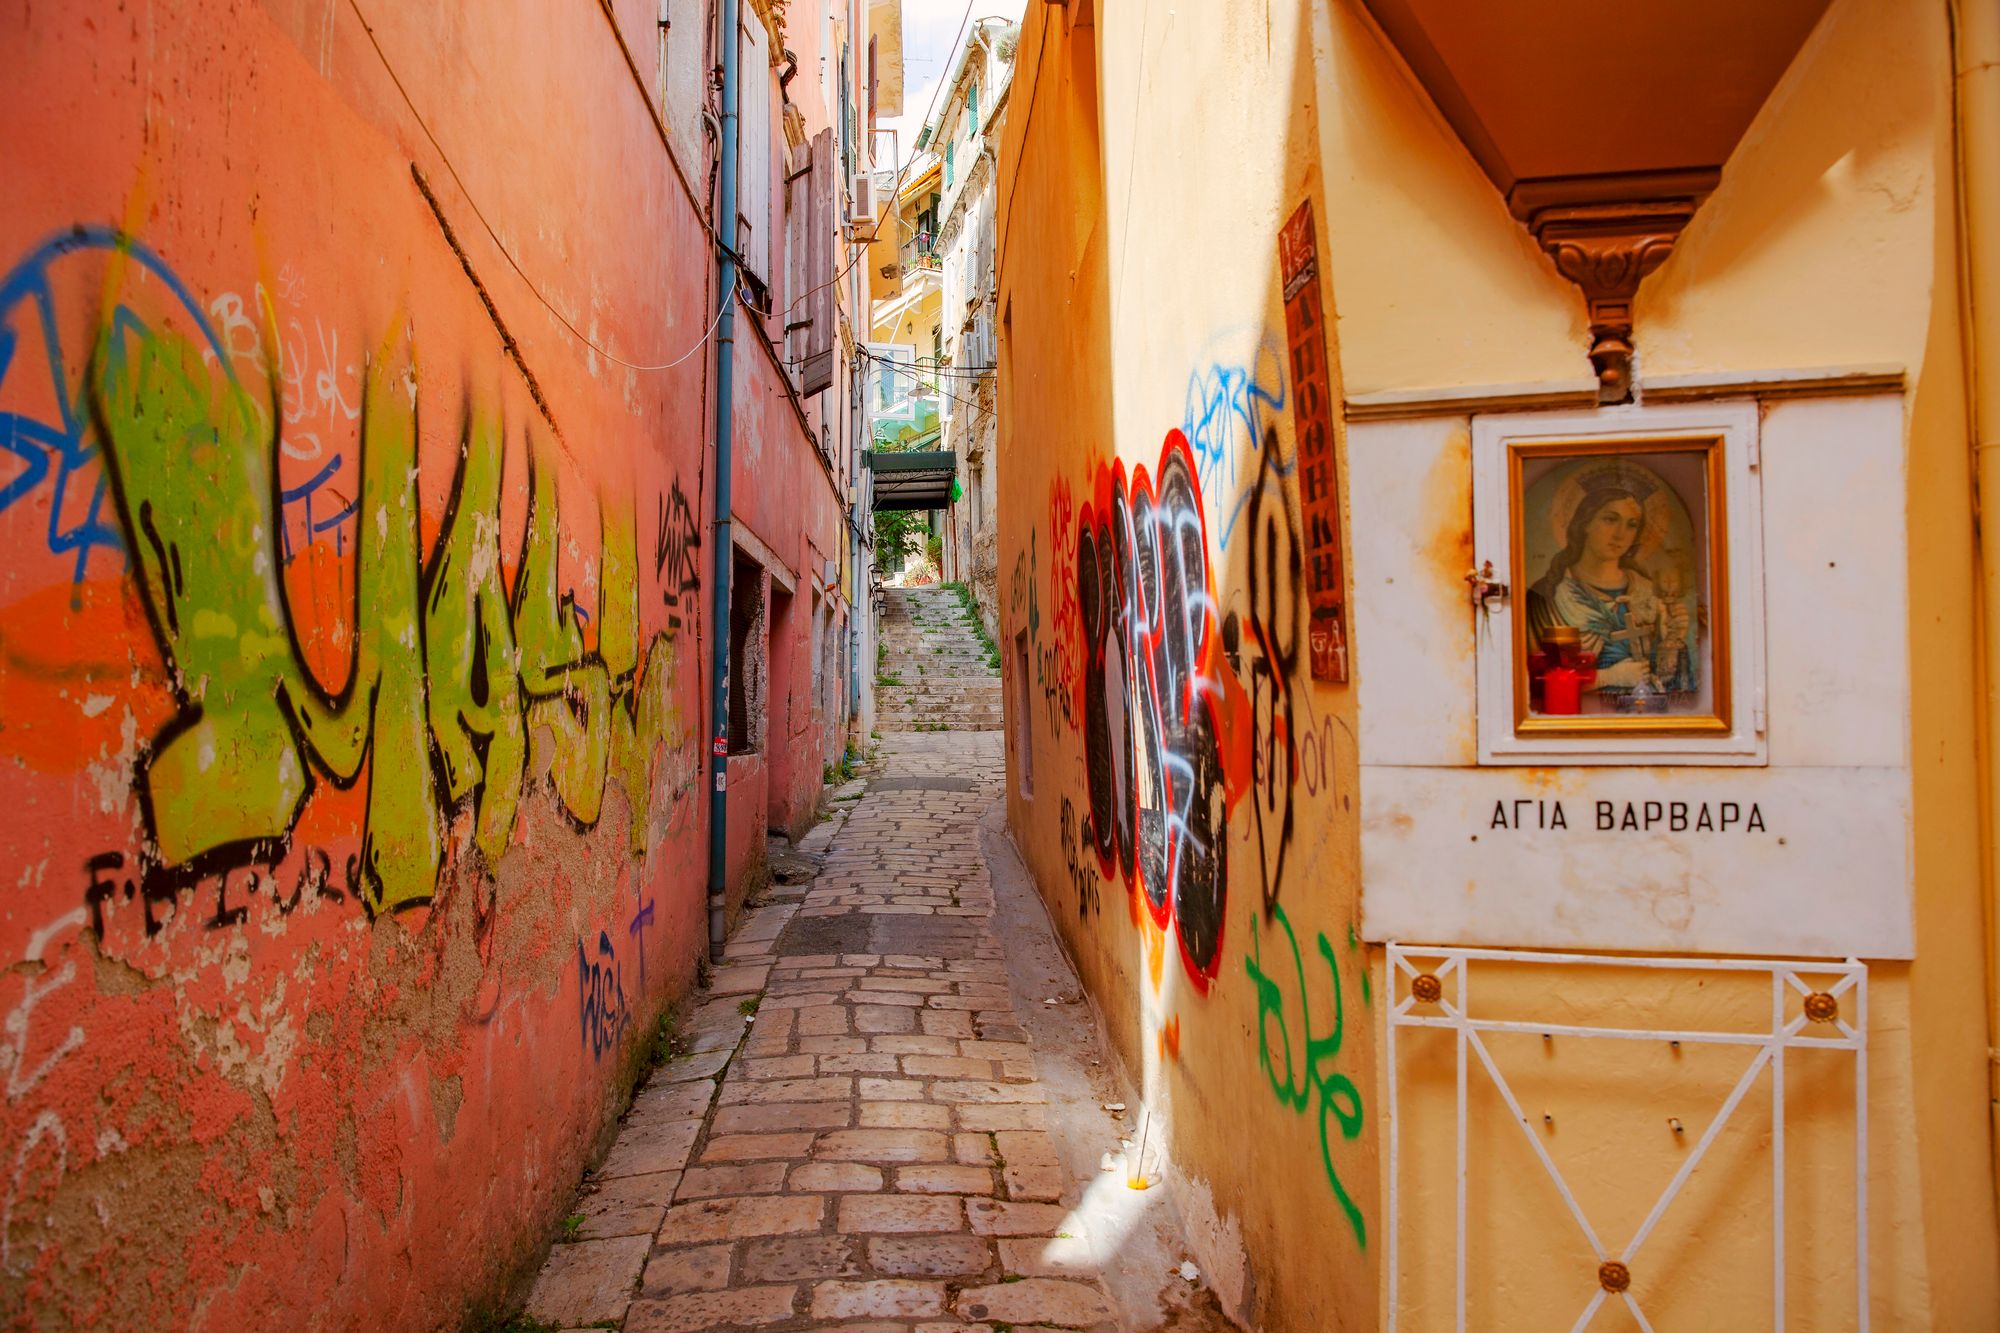 Uusi ja vanha kohtaavat Korfun vanhan kaupungin kaduilla ja kujilla. Satoja vuosia vanhan kaupungin kujille pääsee juuri ja juuri skootterilla. © Marjo Tynkkynen